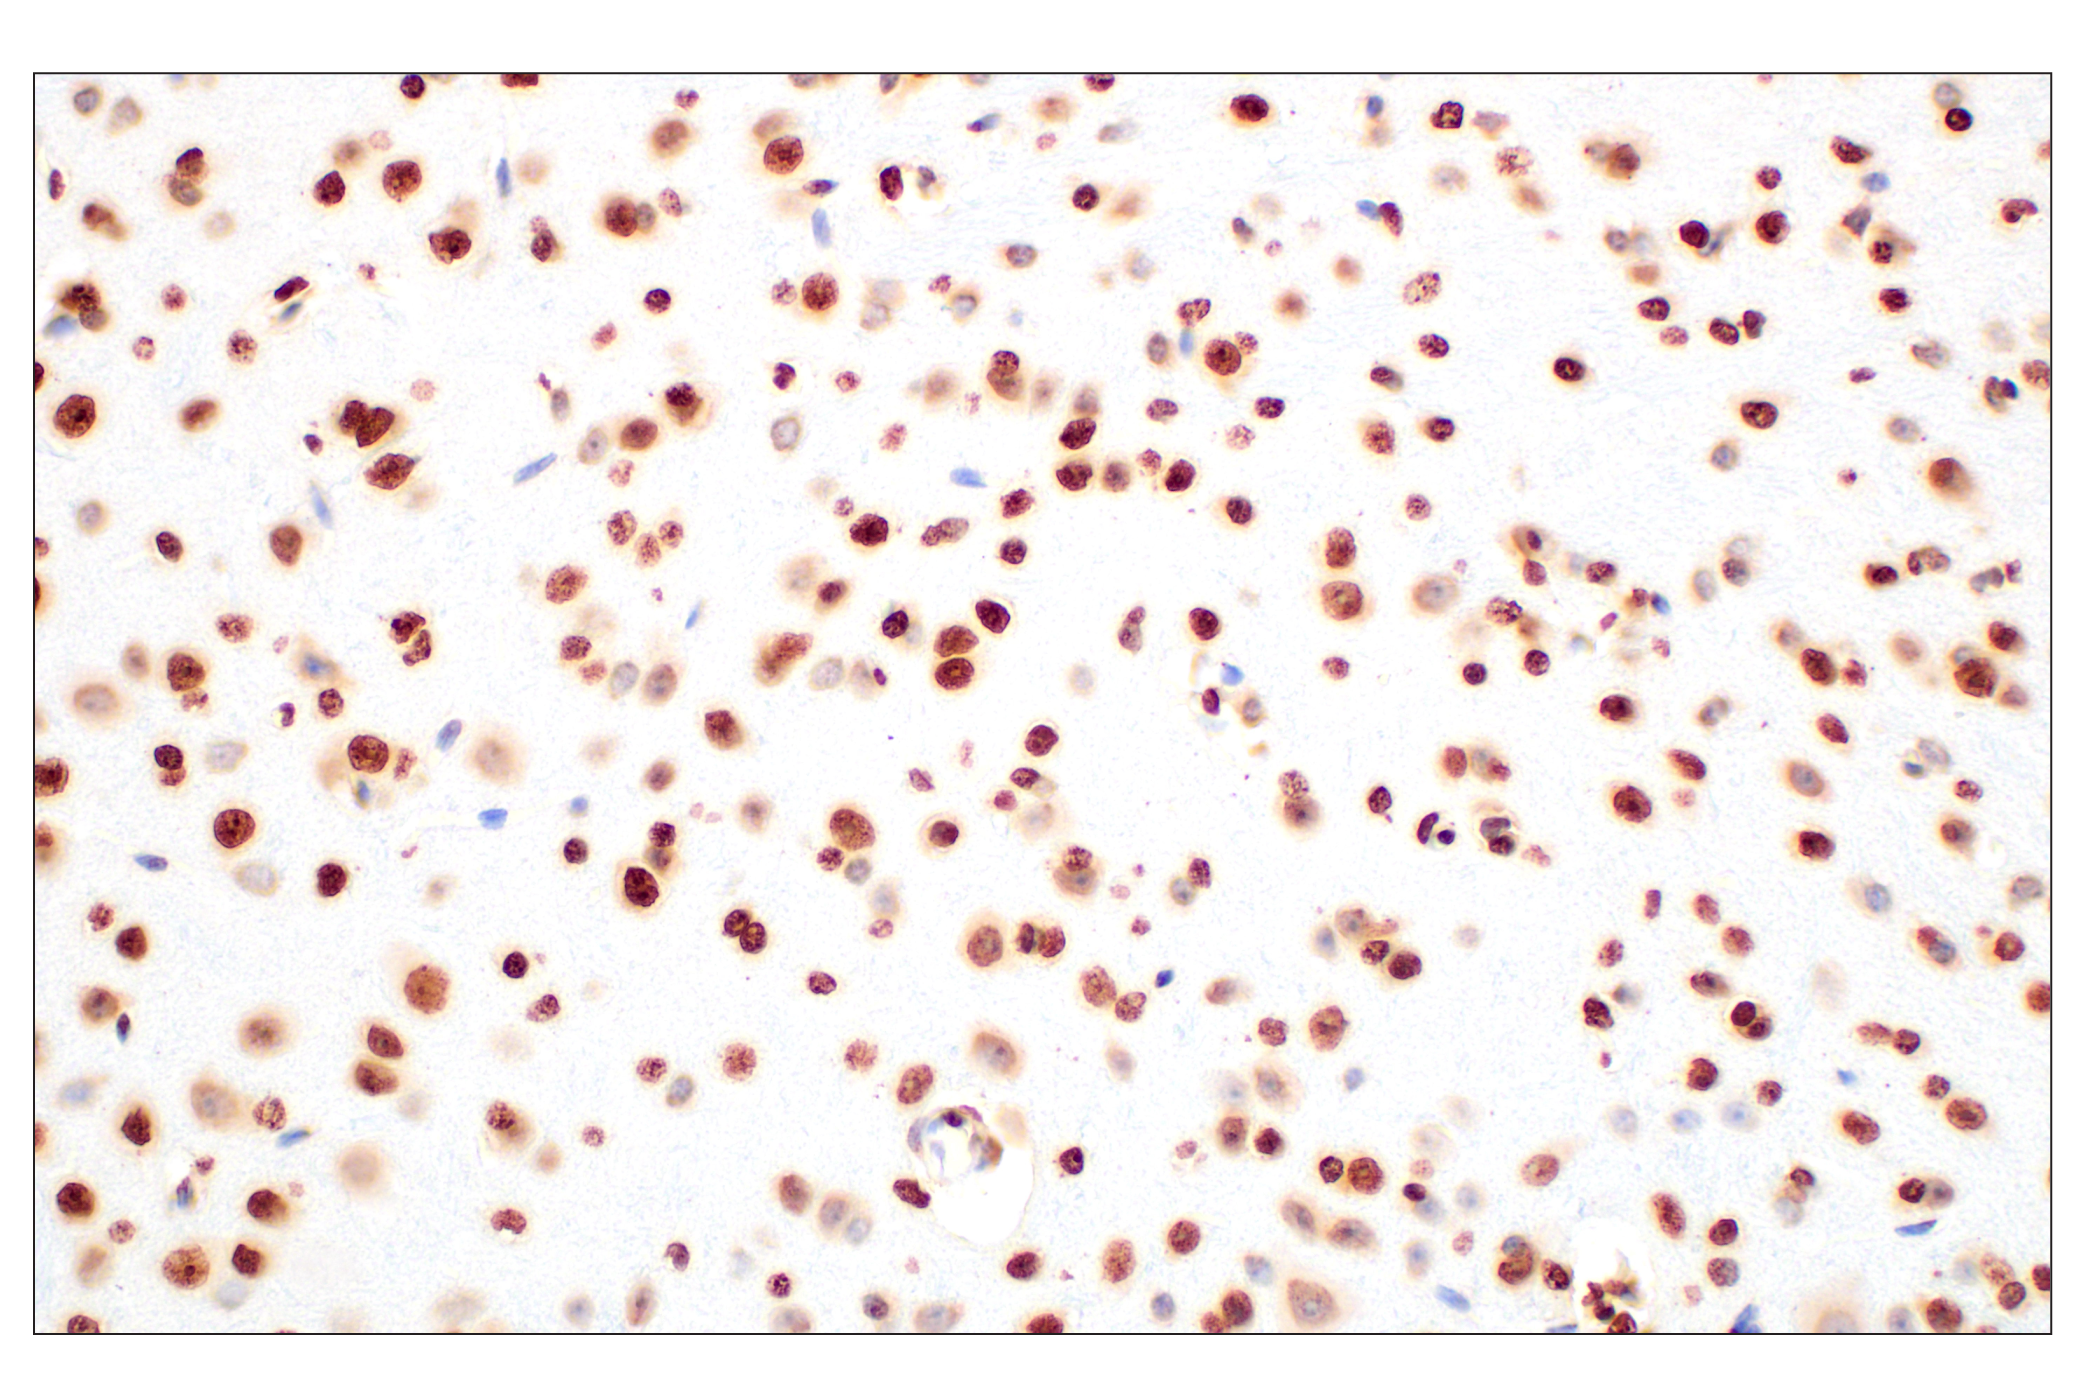  Image 31: Methyl-Histone H3 (Lys36) Antibody Sampler Kit